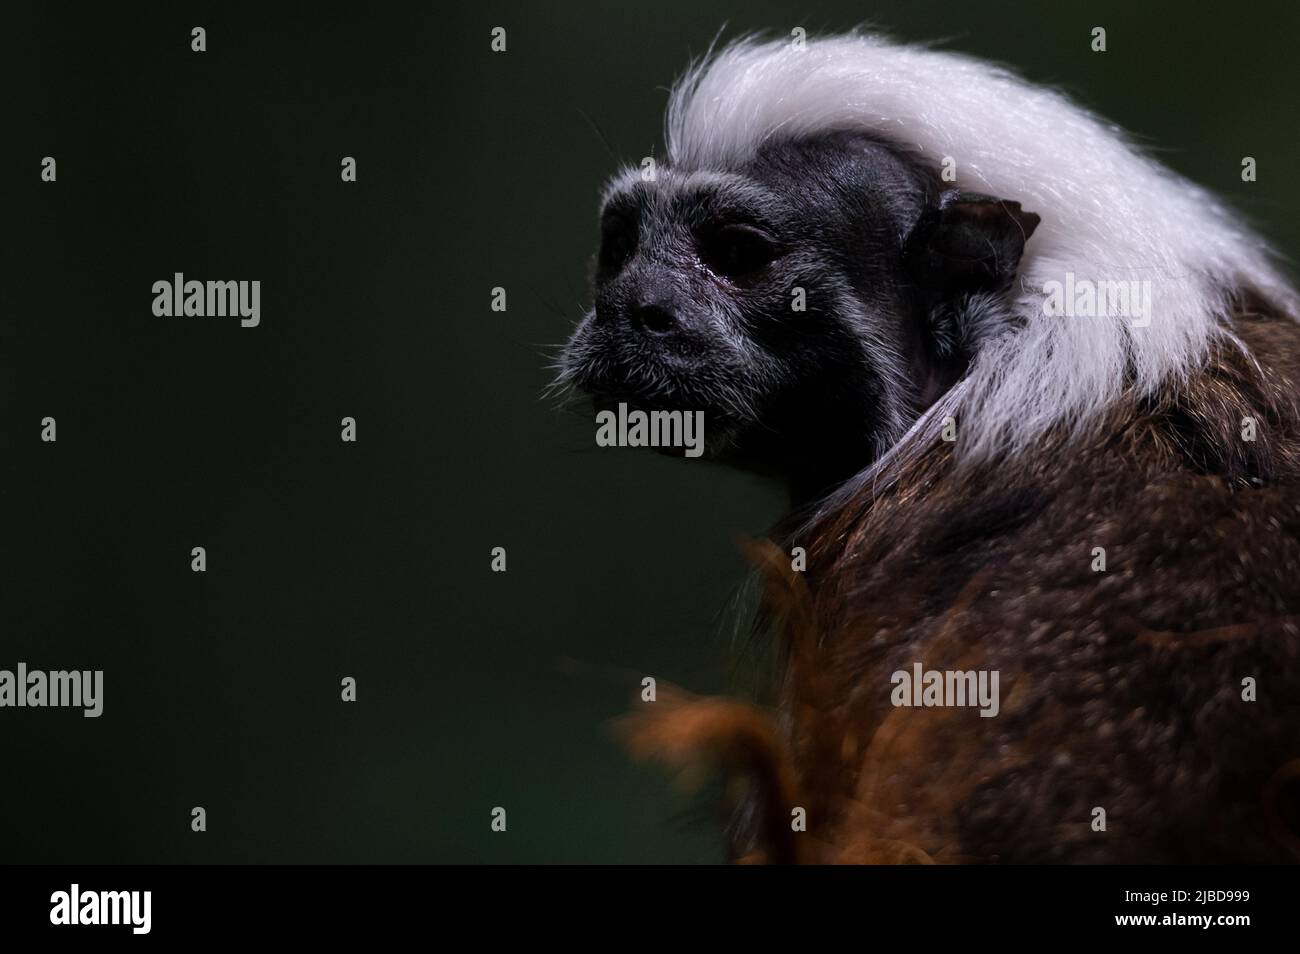 Un tití cabeciblanco (Saguinus oedipus), uno de los primates más pequeños, representado en su recinto en el zoológico de Faunia. Foto de stock